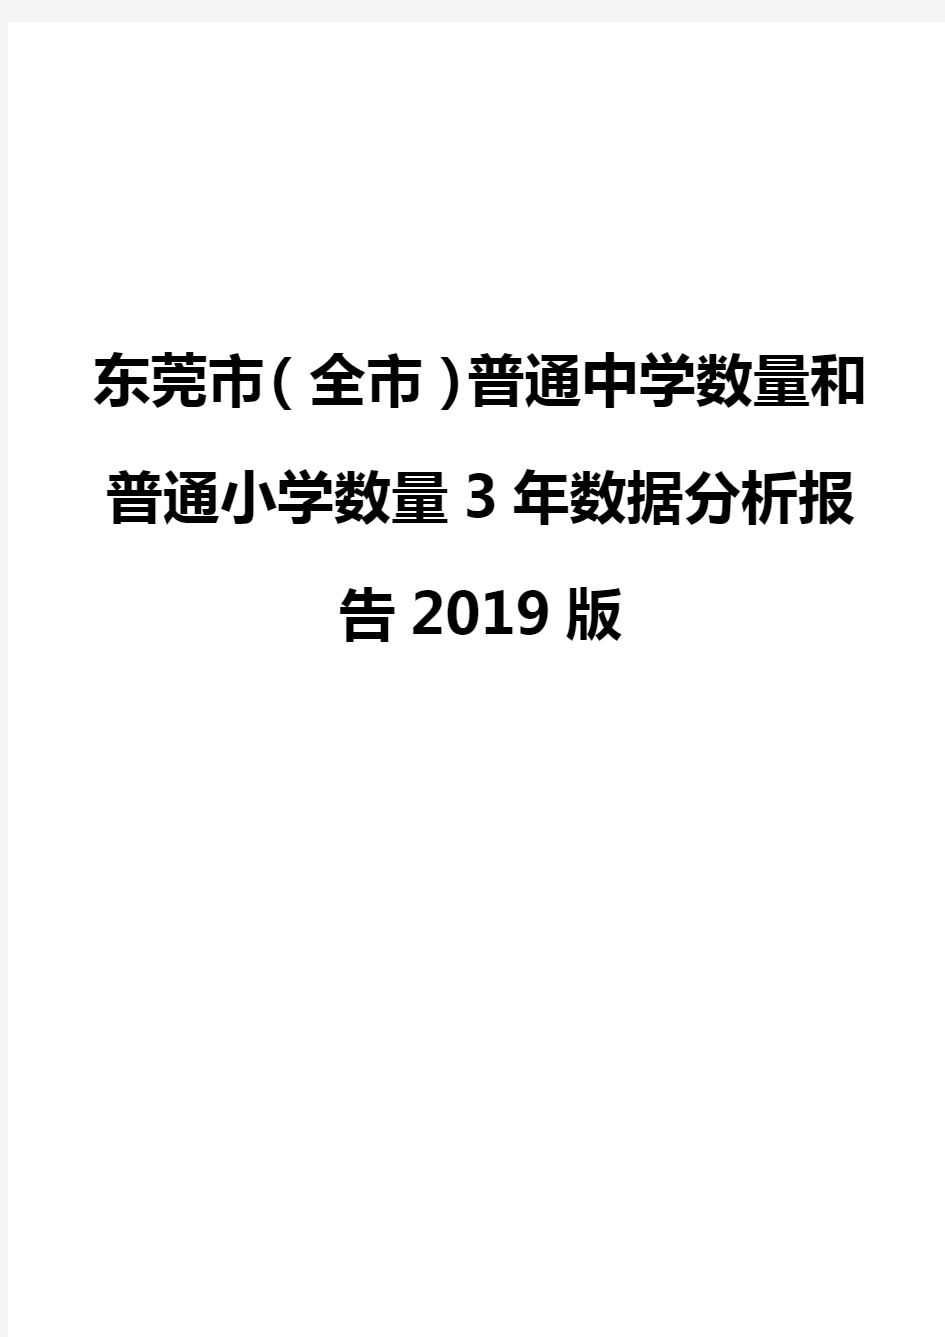 东莞市(全市)普通中学数量和普通小学数量3年数据分析报告2019版